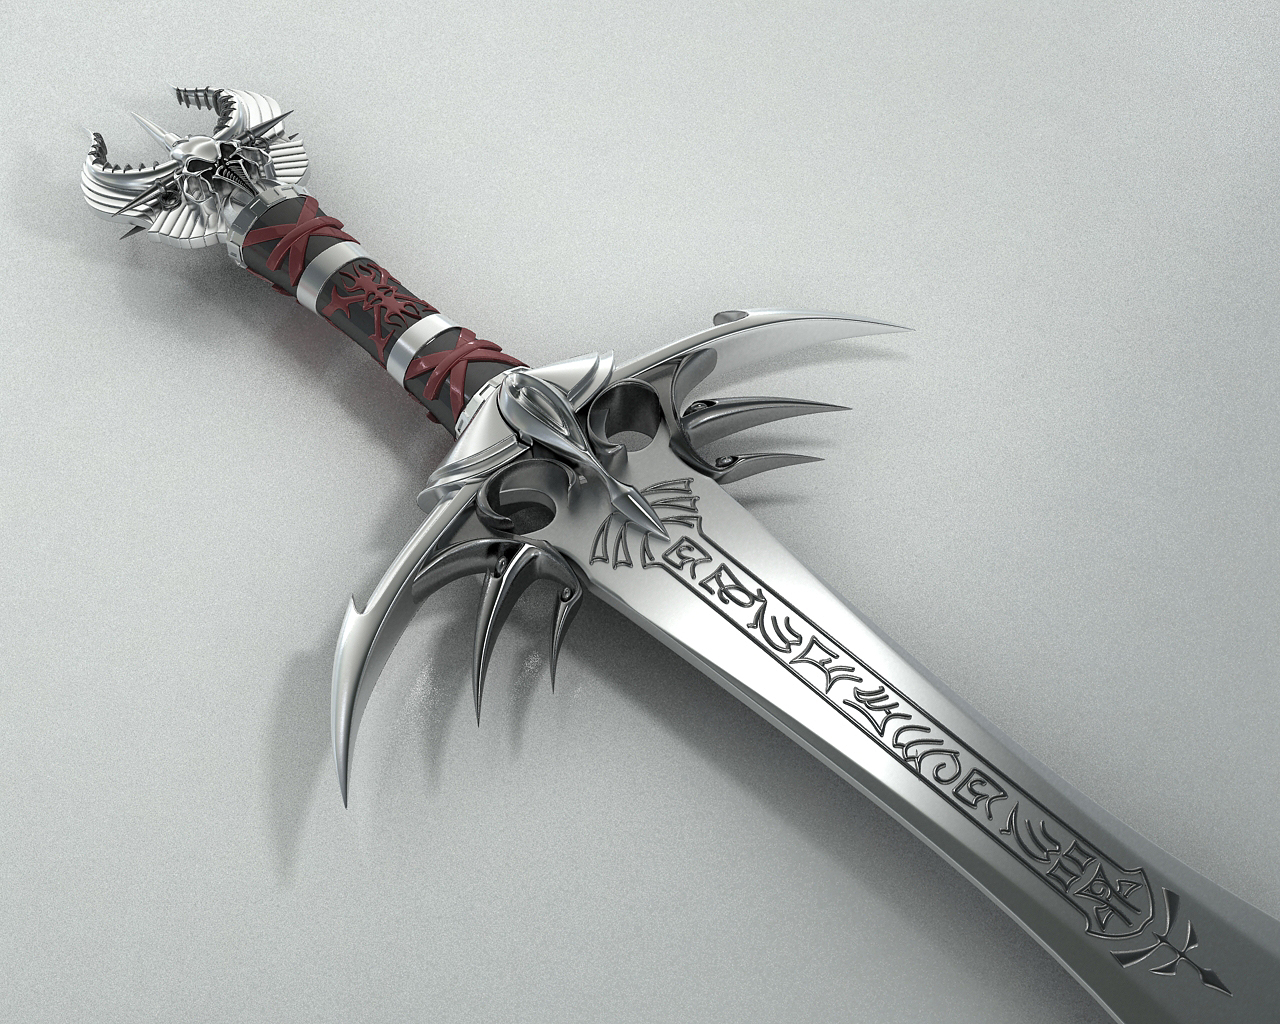 sword_of_power_by_stefanmarius.jpg